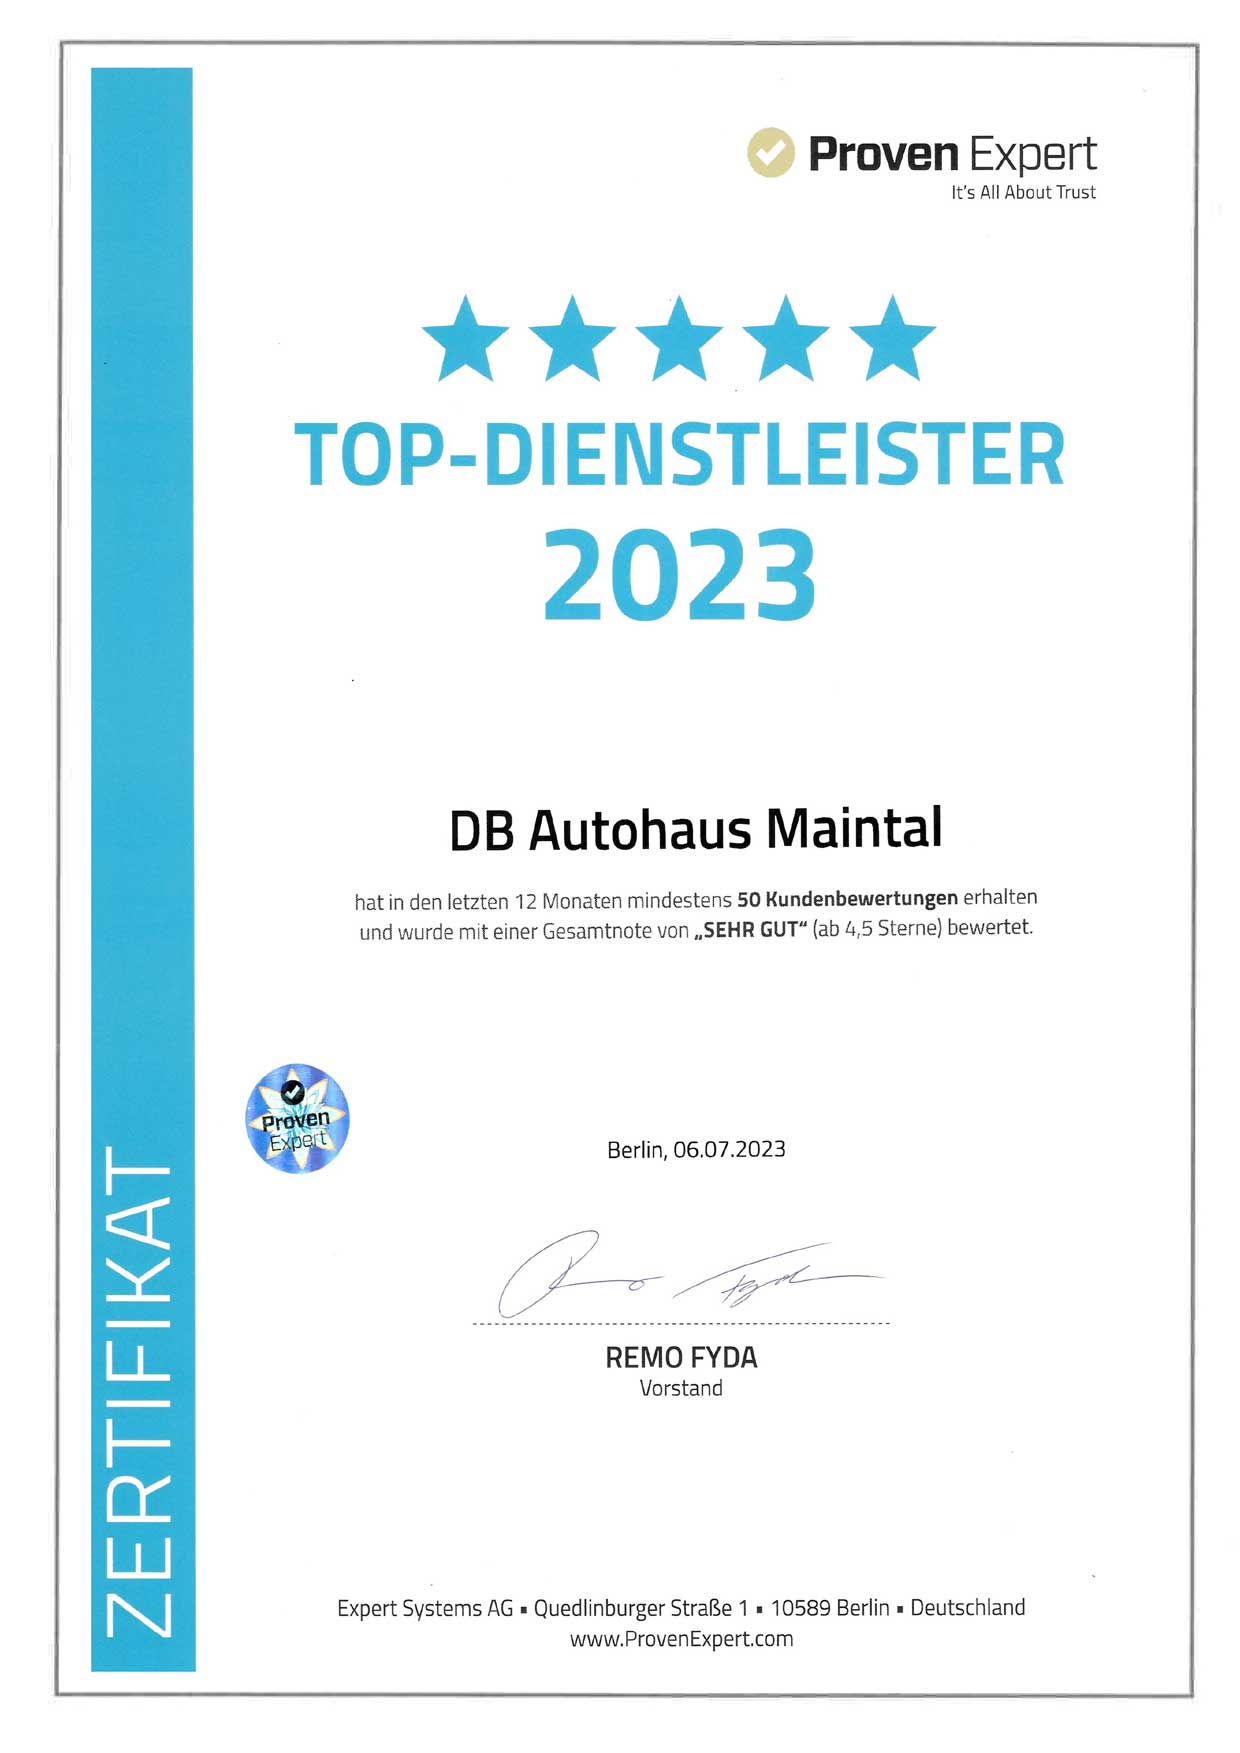 DB Autohaus Maintal wurde als Top-Dienstleister von Proven Expert ausgezeichnet